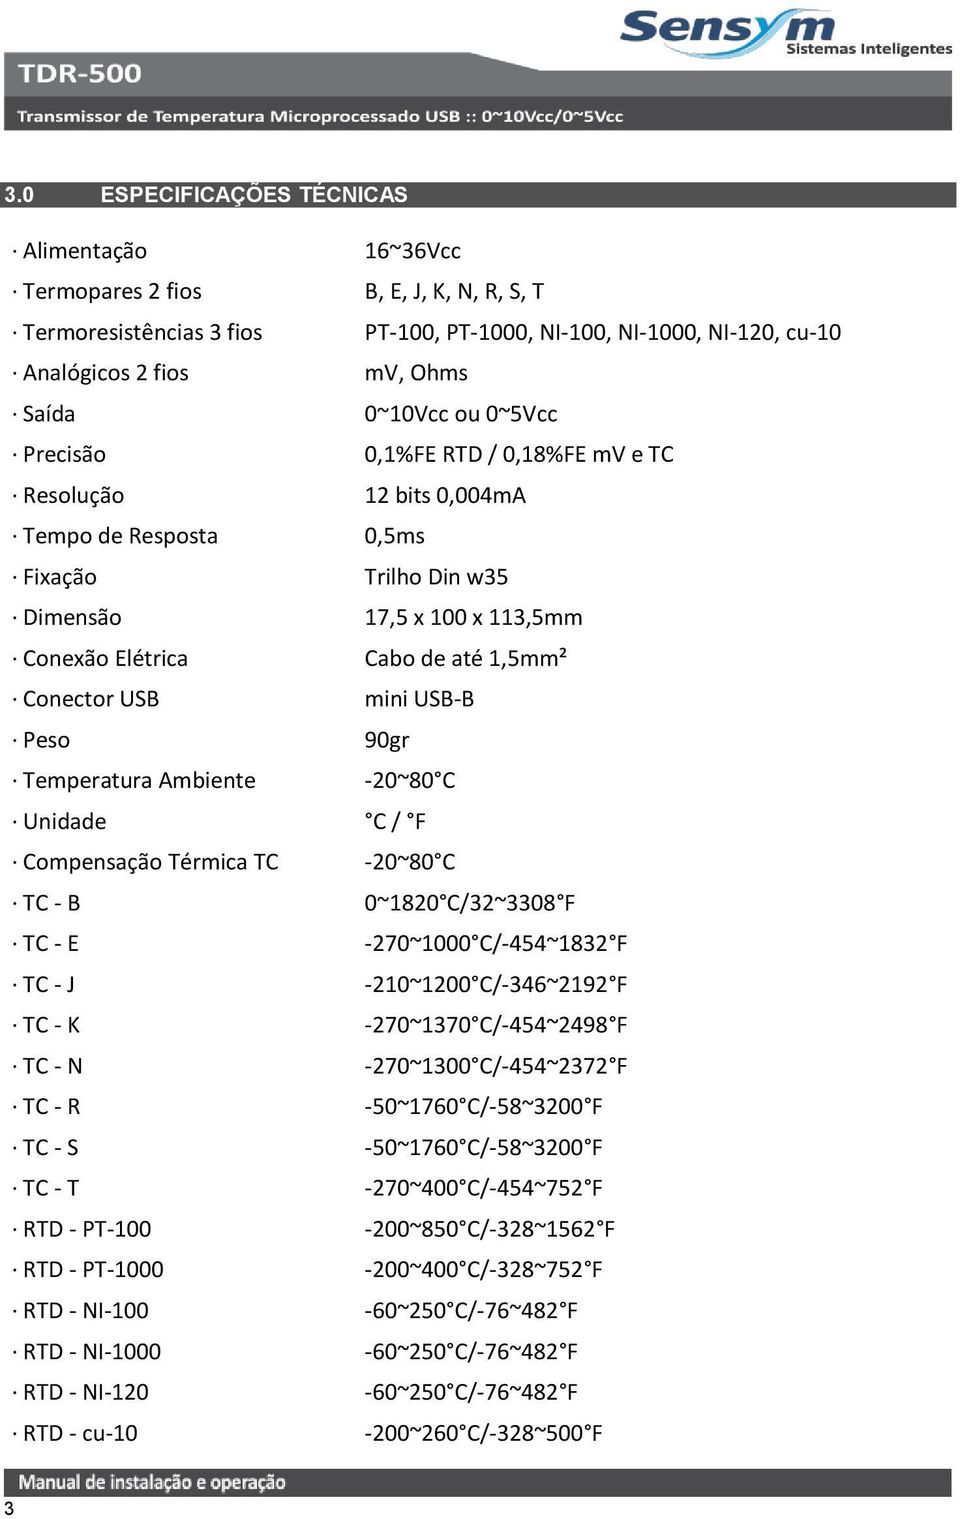 Conector USB mini USB-B Peso 90gr Temperatura Ambiente -20~80 C Unidade C / F Compensação Térmica TC -20~80 C TC - B 0~1820 C/32~3308 F TC - E -270~1000 C/-454~1832 F TC - J -210~1200 C/-346~2192 F